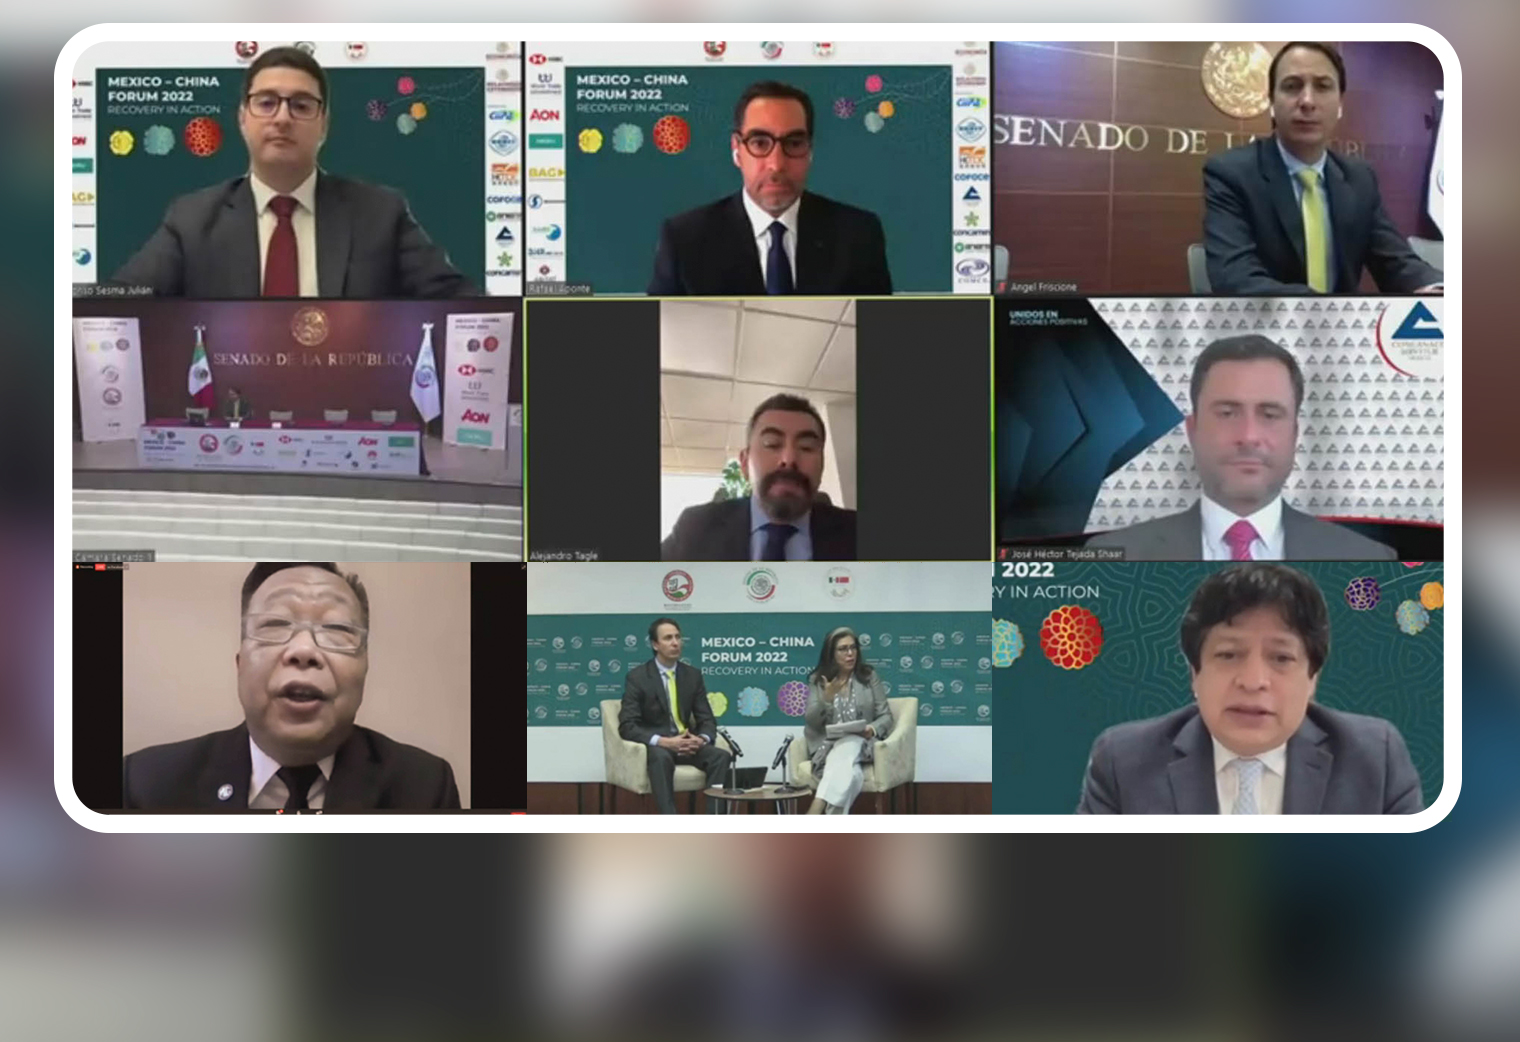 Tercer día del evento “México-China Forum 2022: Recovery in action”